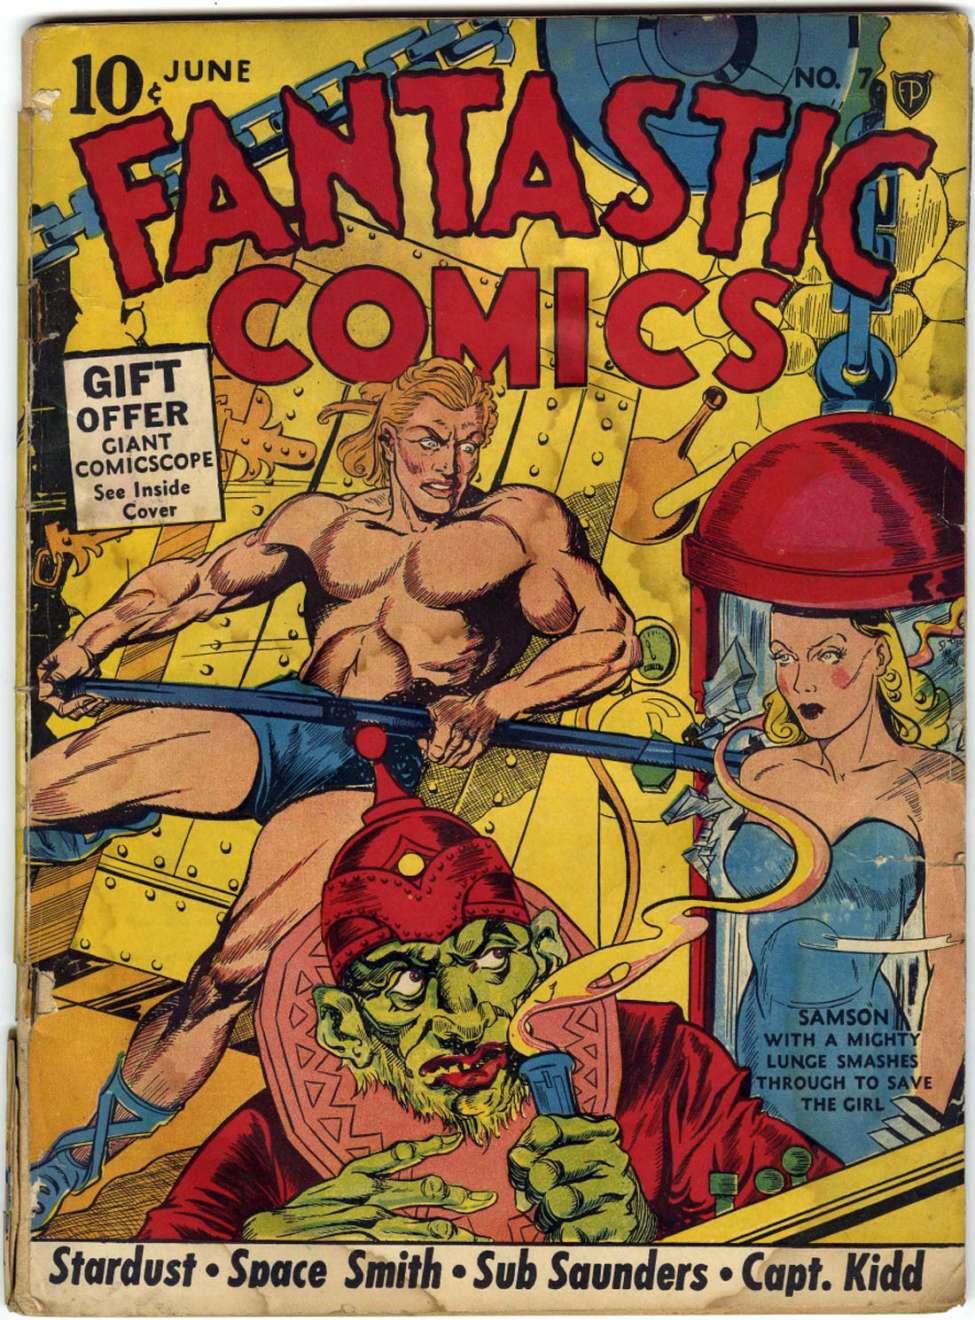 Comic Book Cover For Fantastic Comics 7 (paper/12fiche) - Version 2